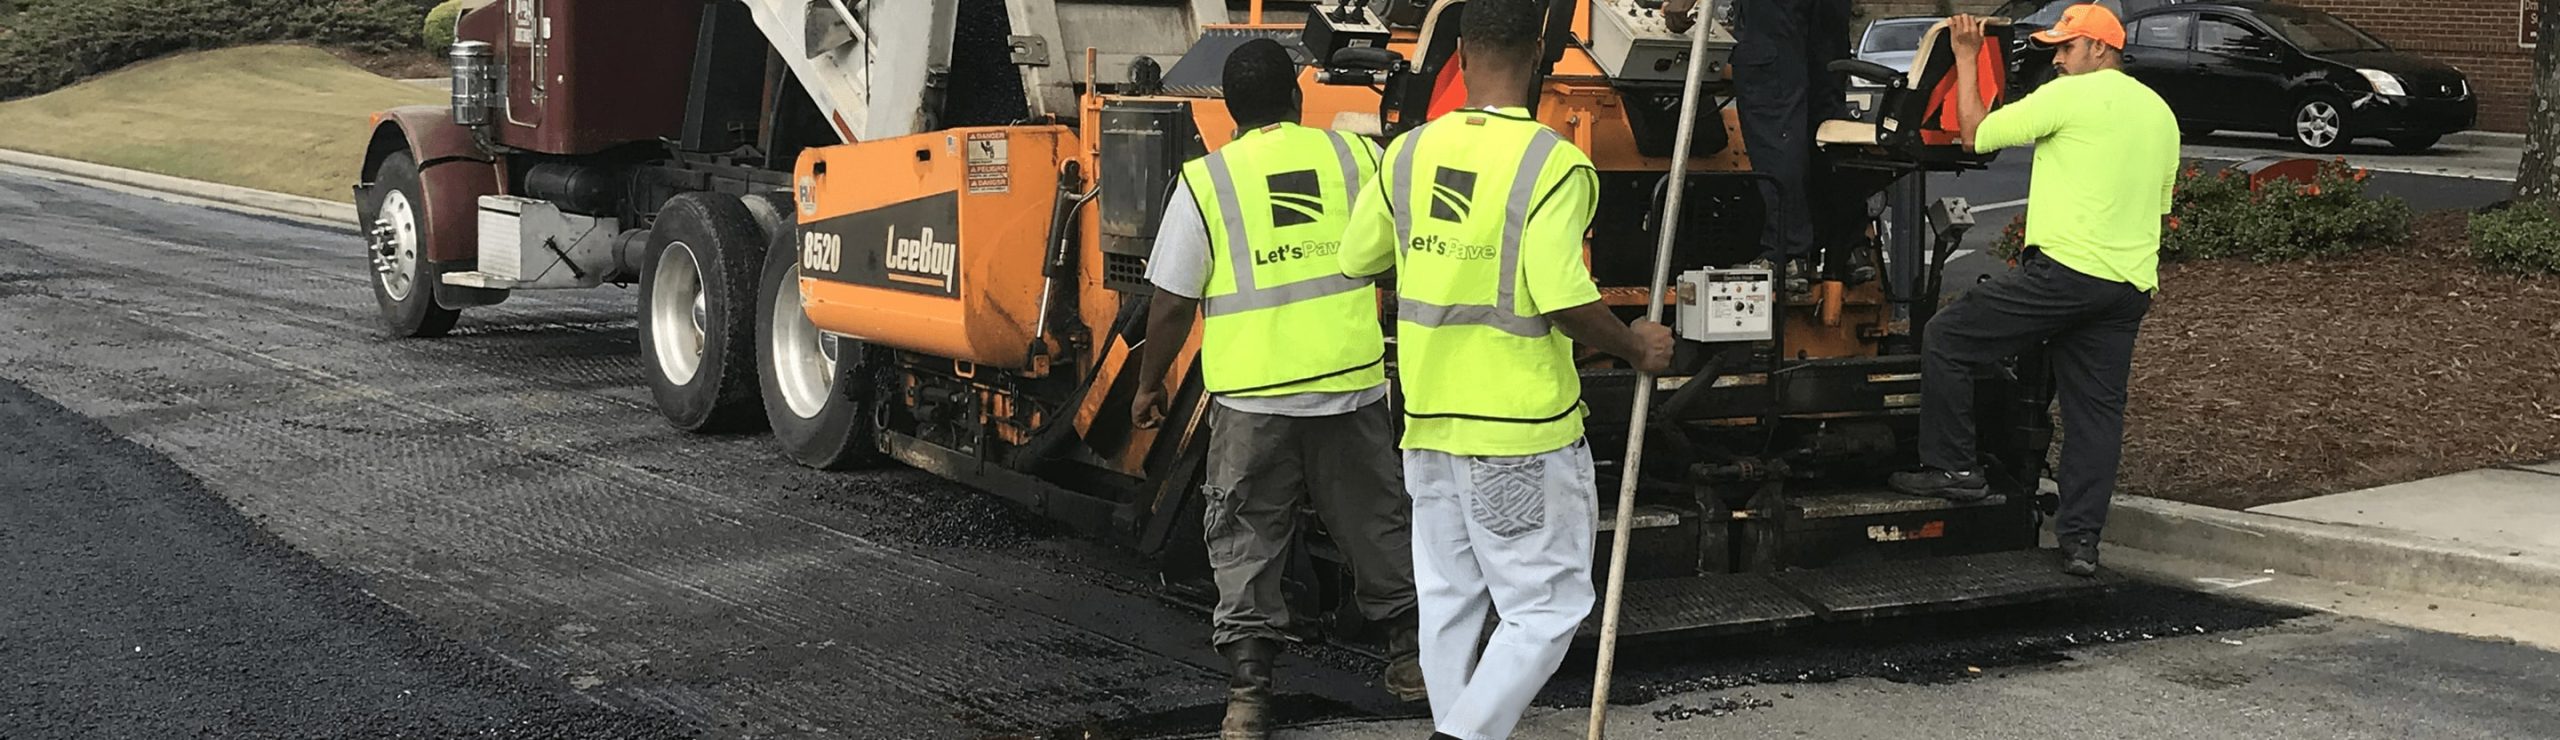 let's pave asphalt pavers